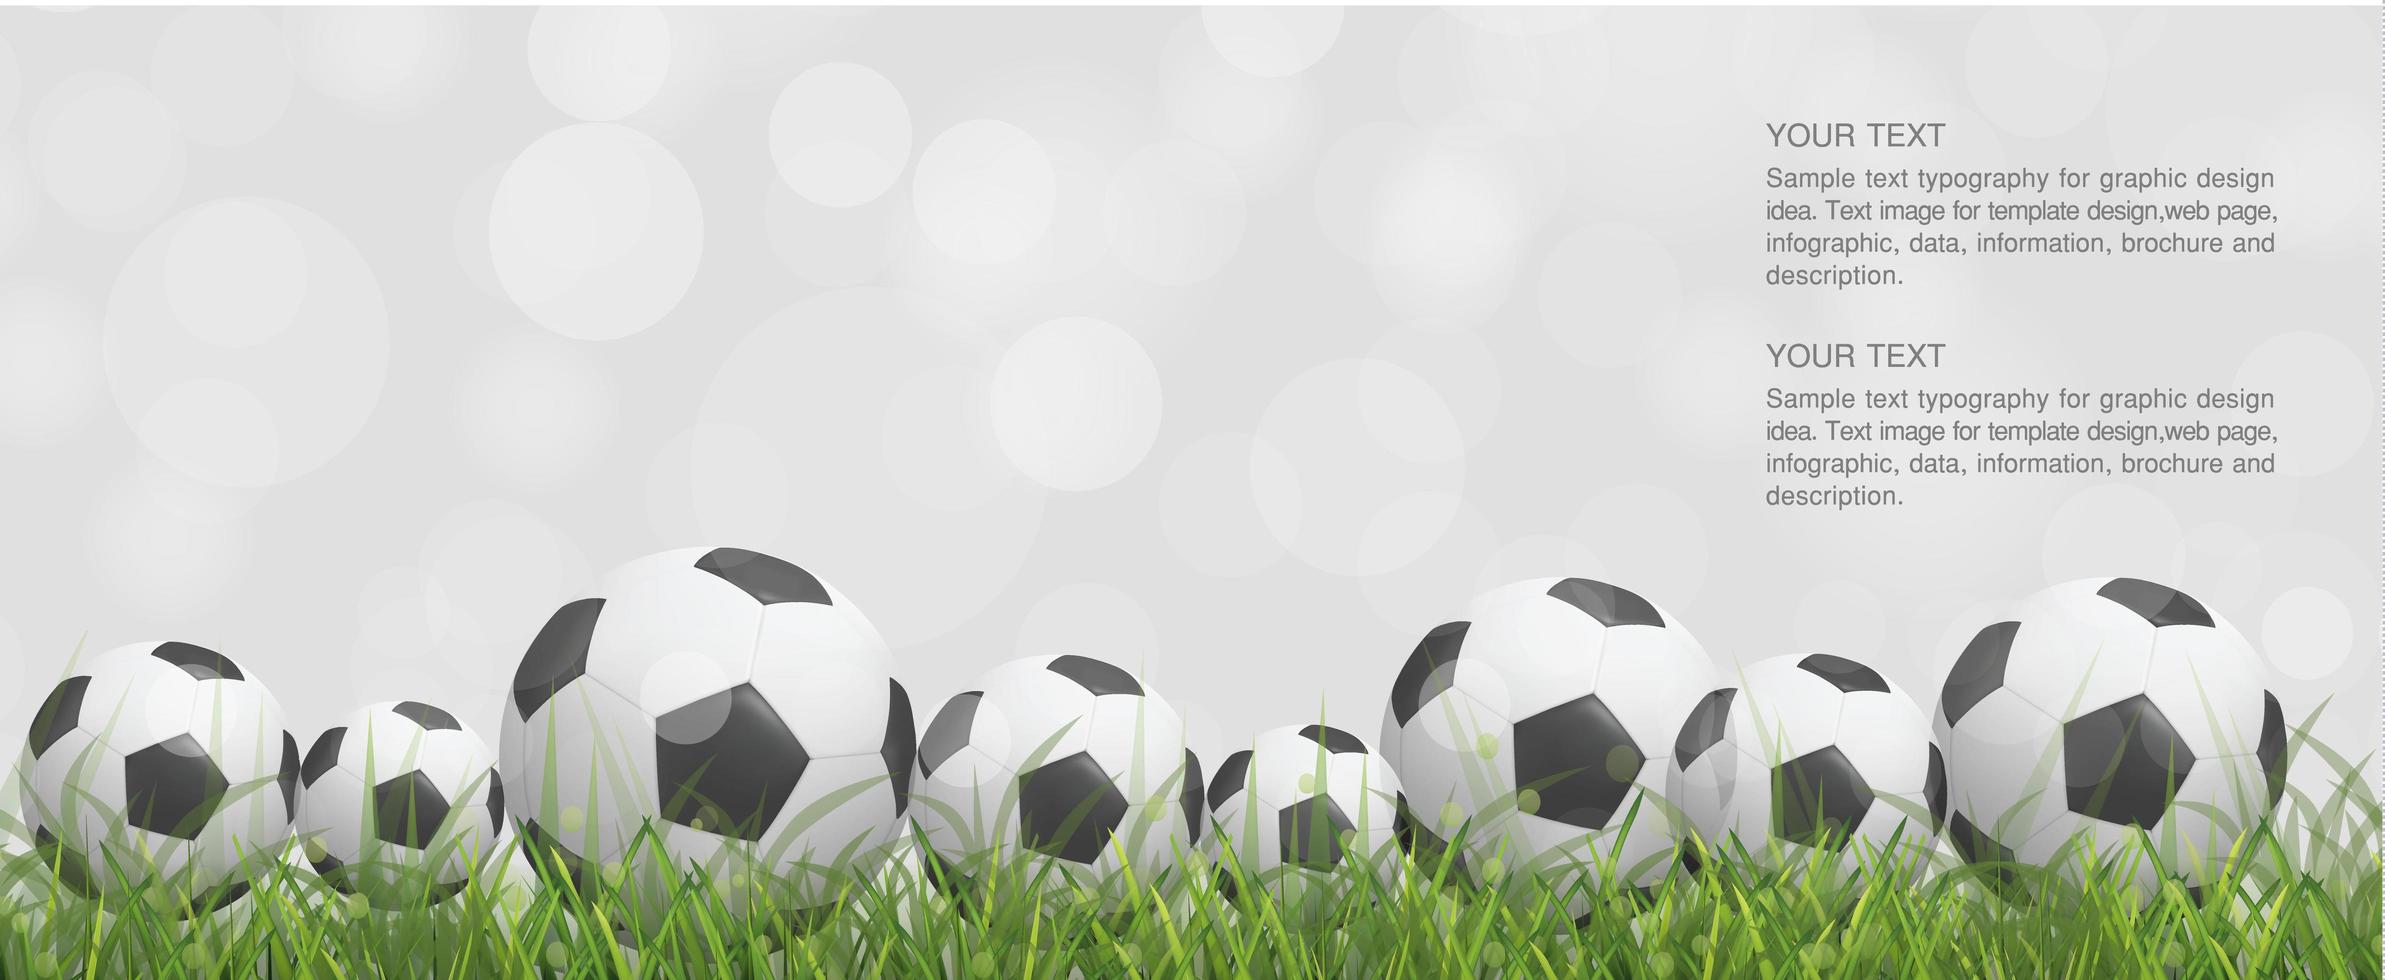 meerdere voetbal of voetballen in gras vector